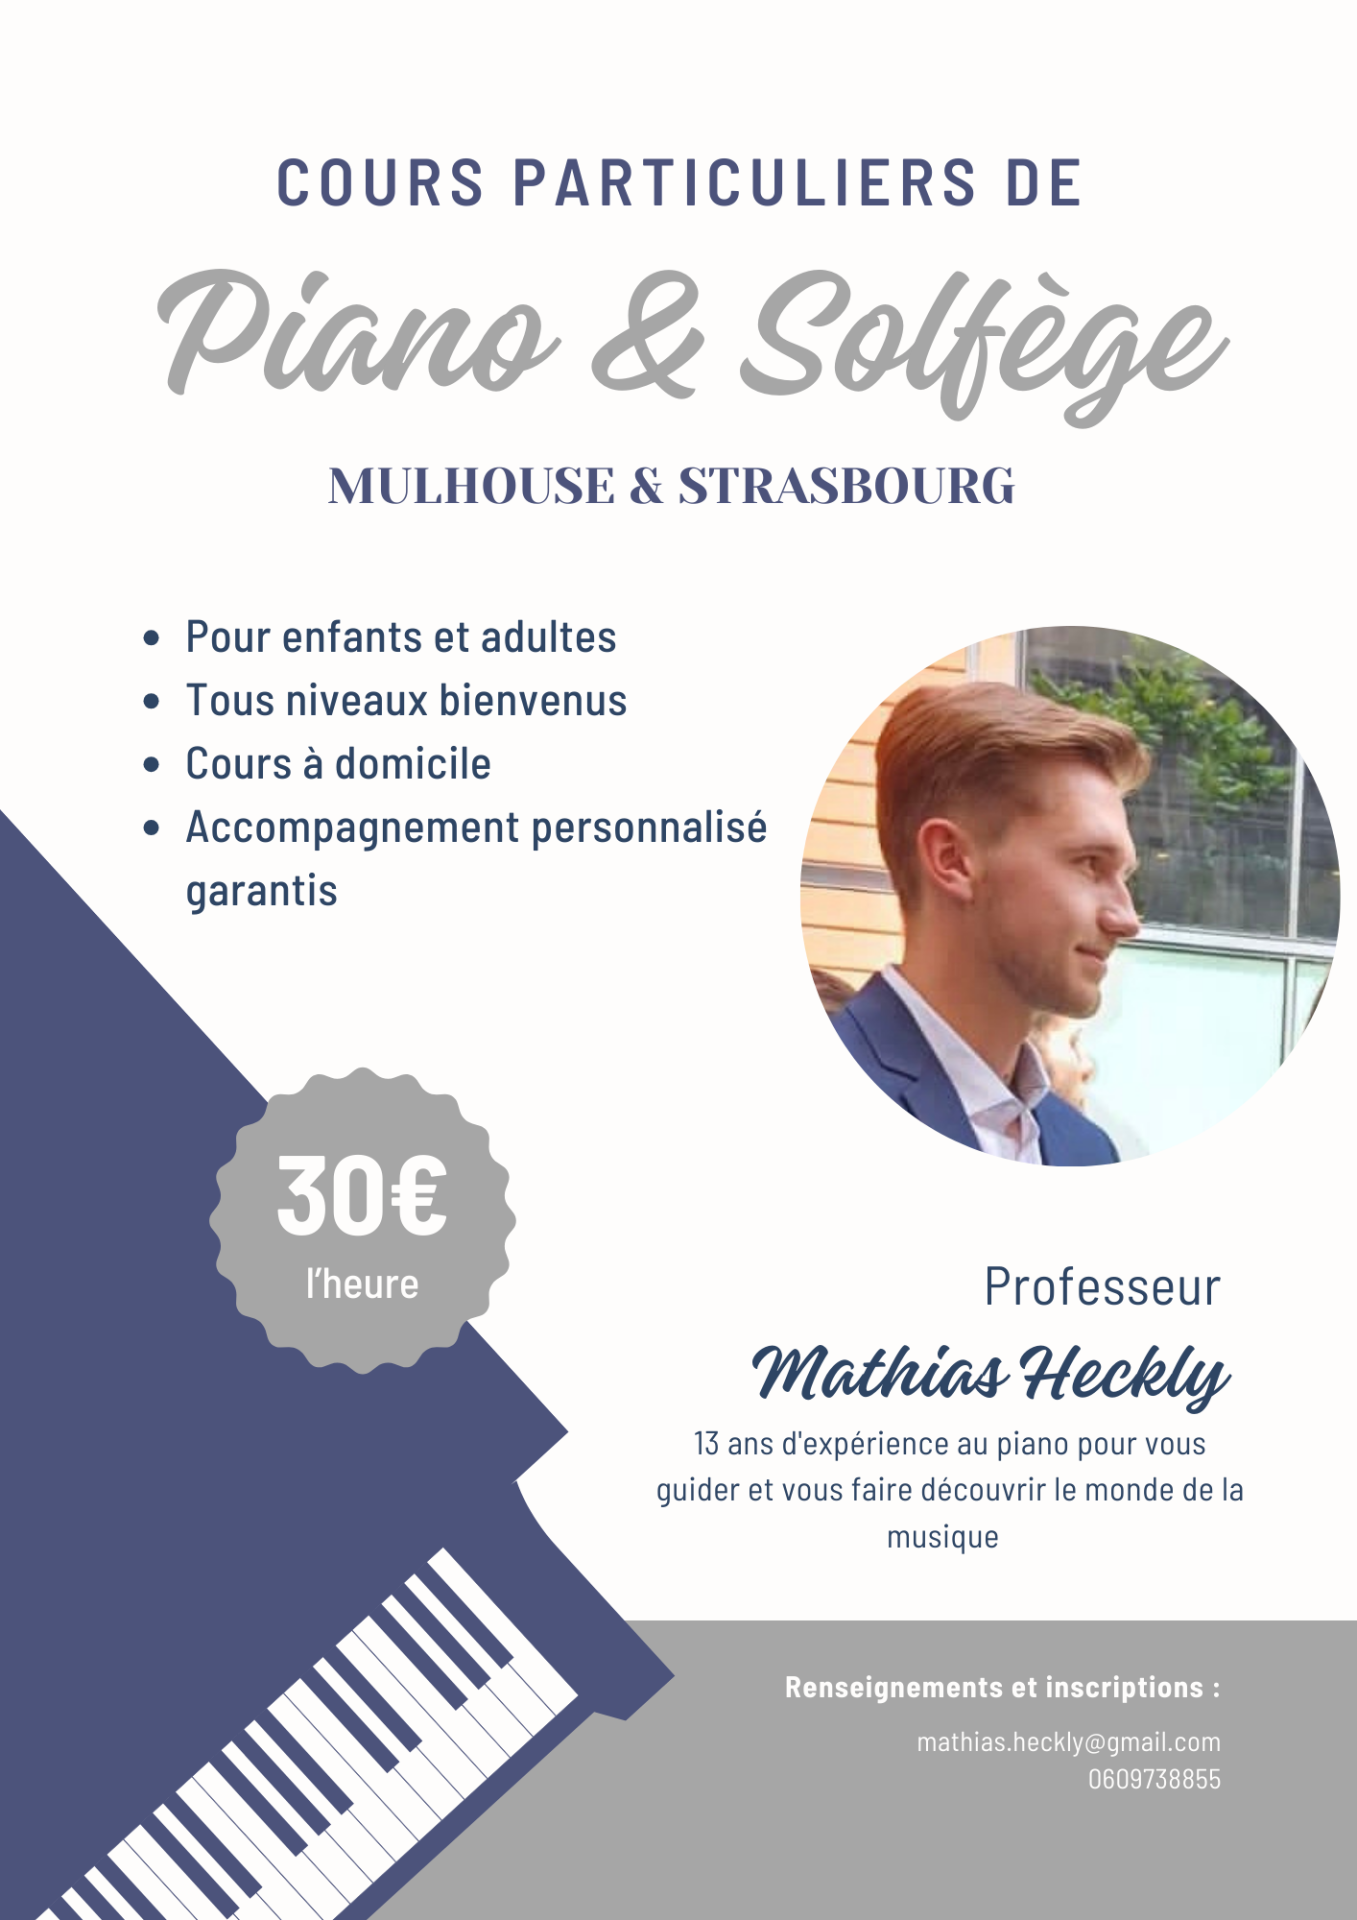 Mr HECKLY : Professeur de pianos sur la région de Mulhouse